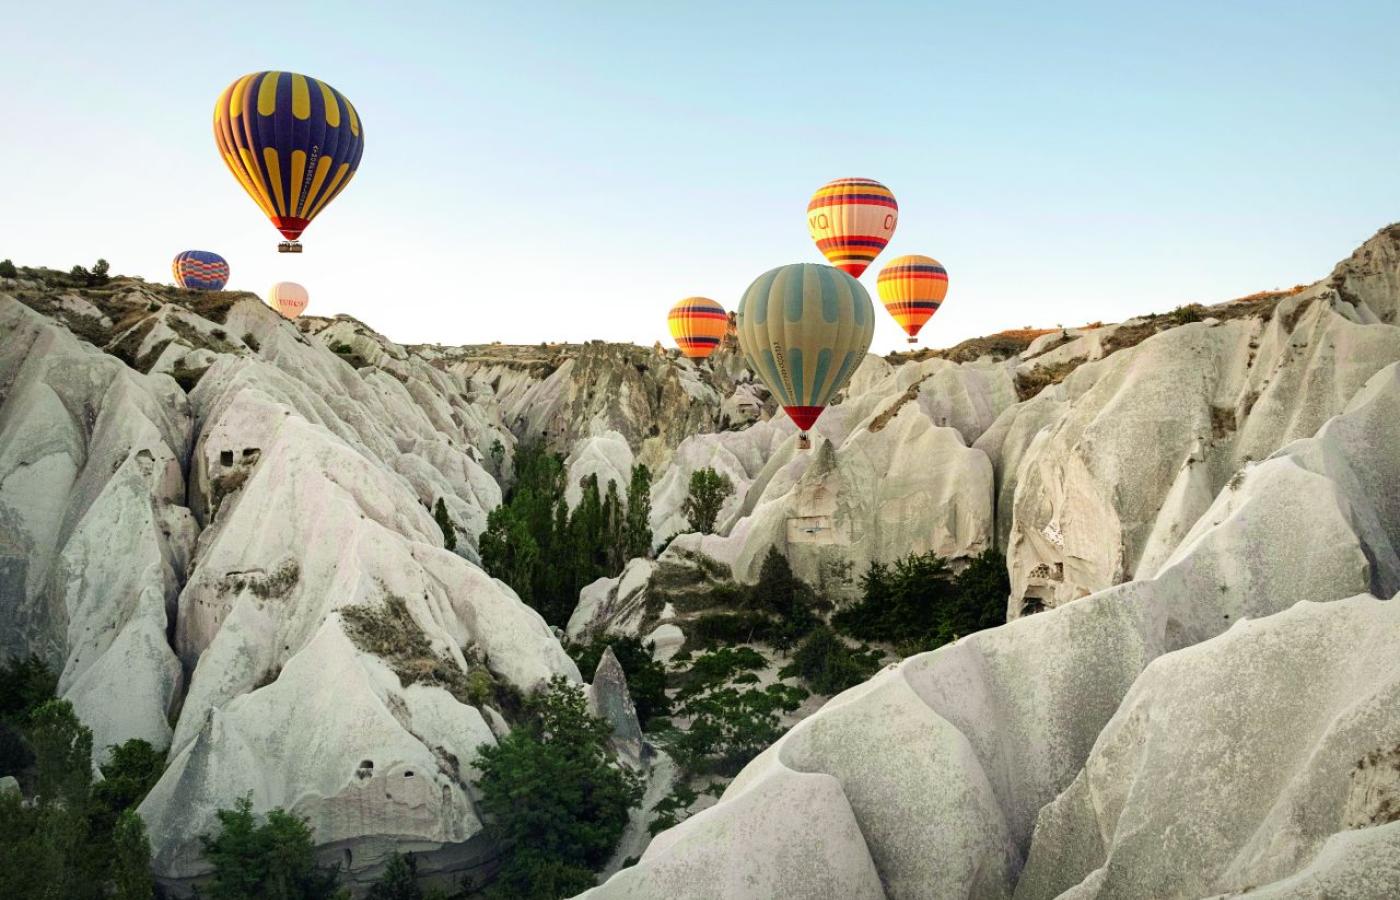  Turcja. Dziesiątki balonów wznoszących się o wschodzie słońca nad skałami Kapadocji to przeżycie nie do opisania. (Fot. Karolina Jonderko)